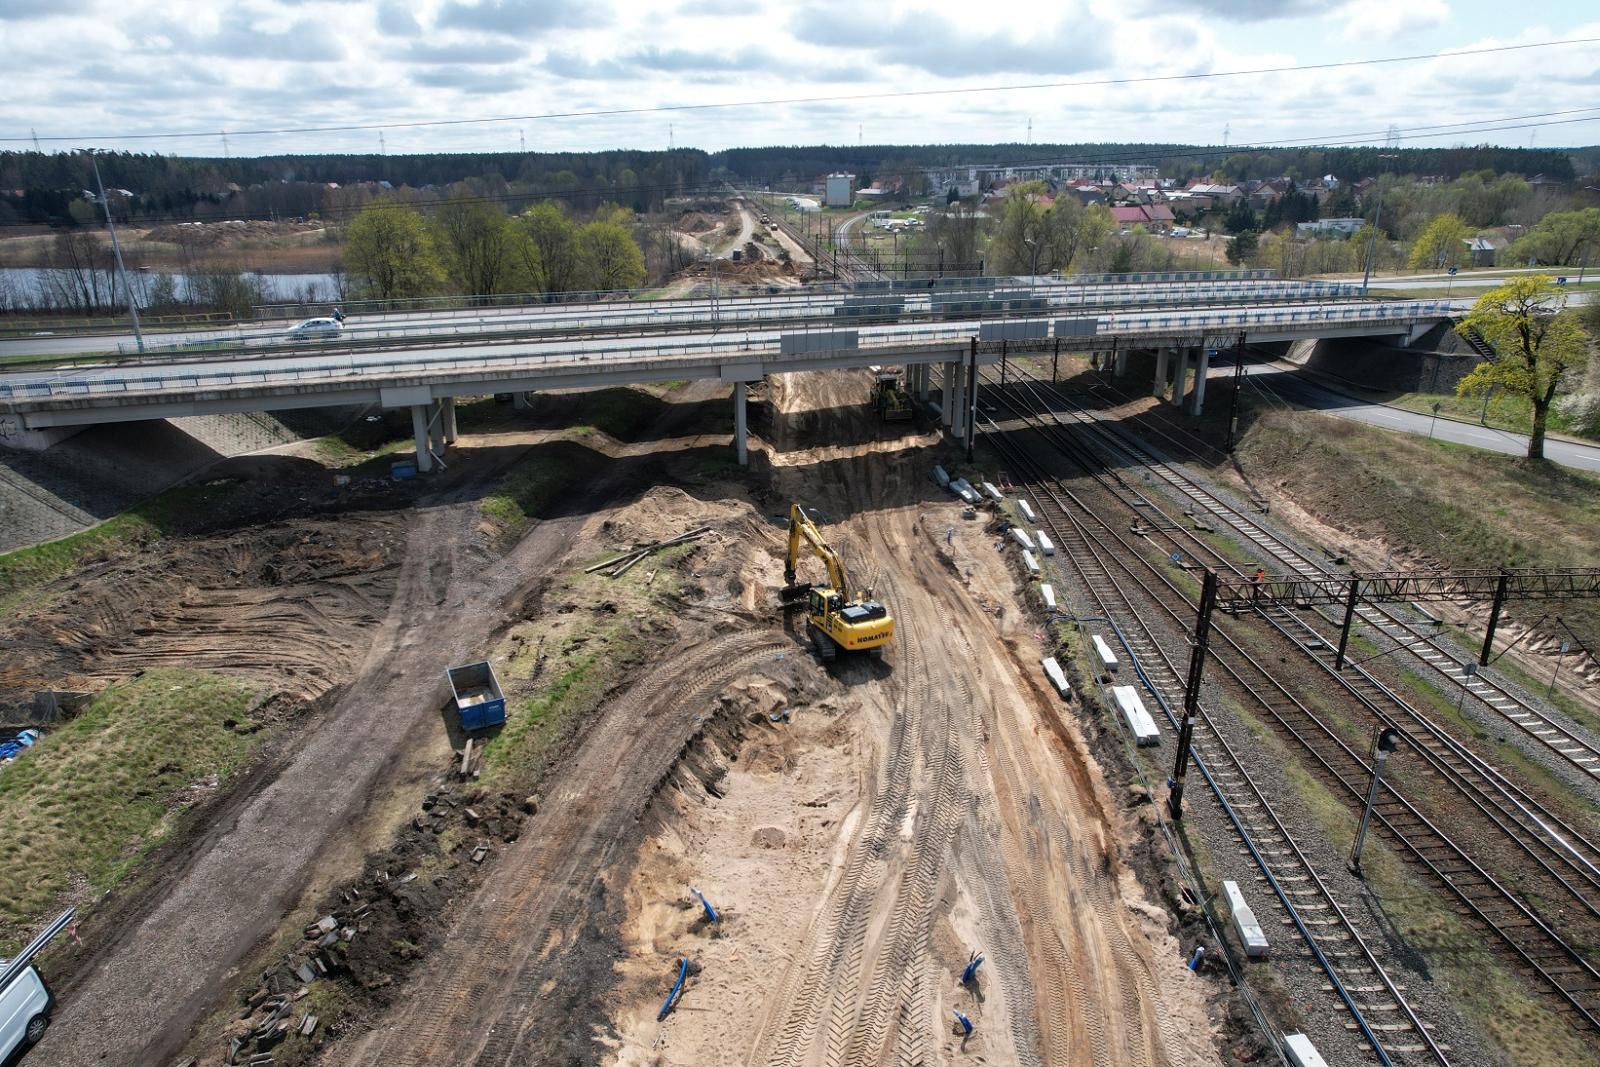 Zmiany na stacji kolejowej w Ełku. Poprawa warunków przewozów towarowych i lepszy dostęp do kolei